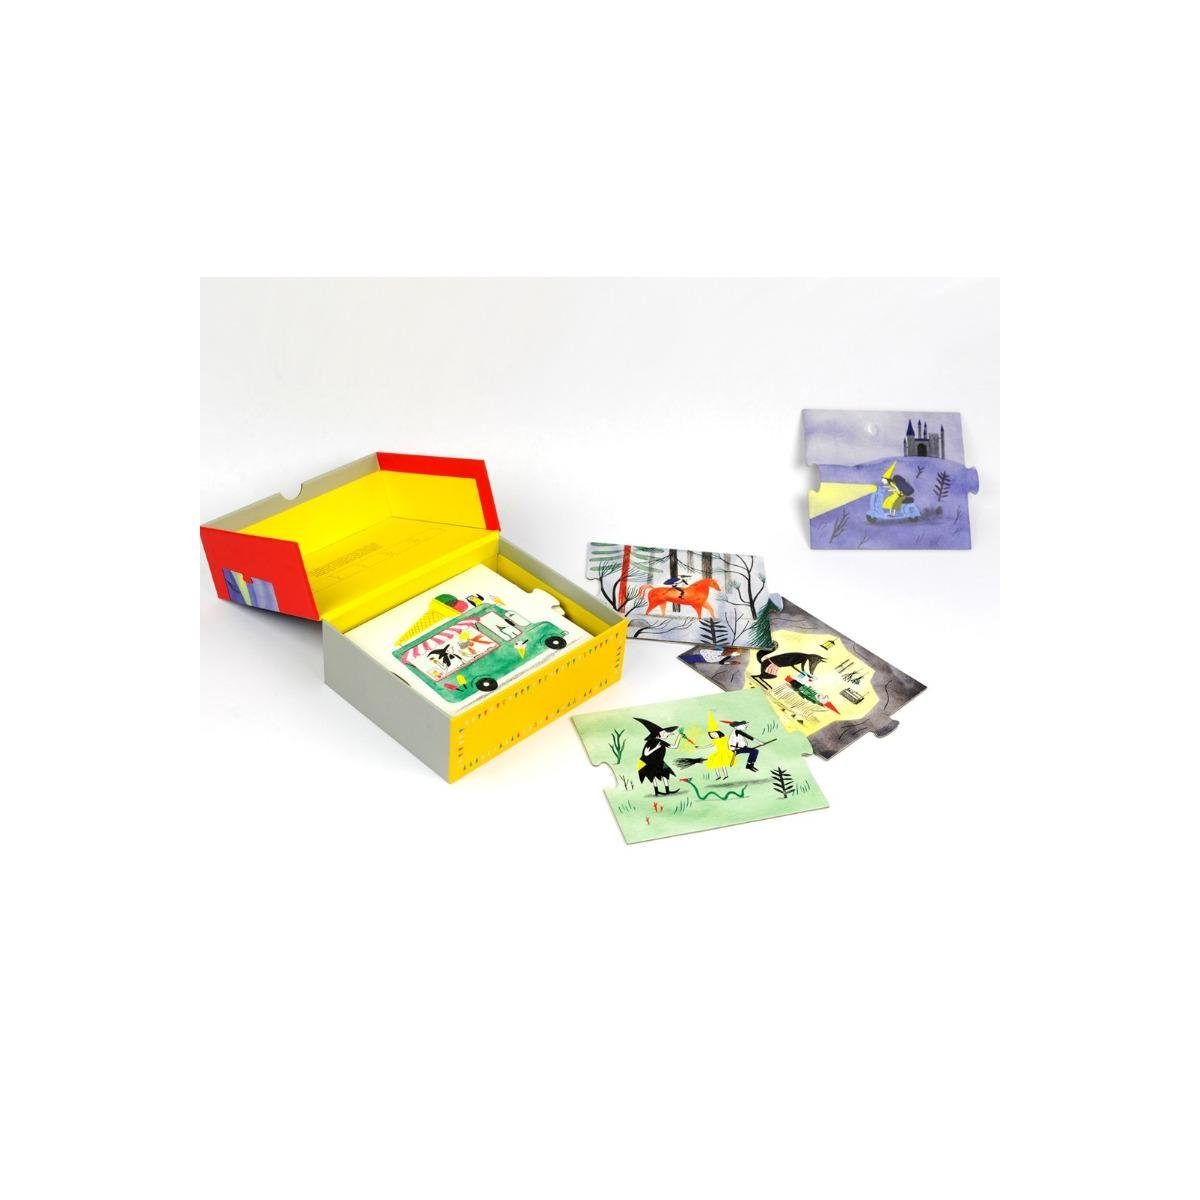 1+ Märchen-Box Die Puzzlespiel, King für Spiel, Spieler,... - Laurence 440060 Familienspiel -